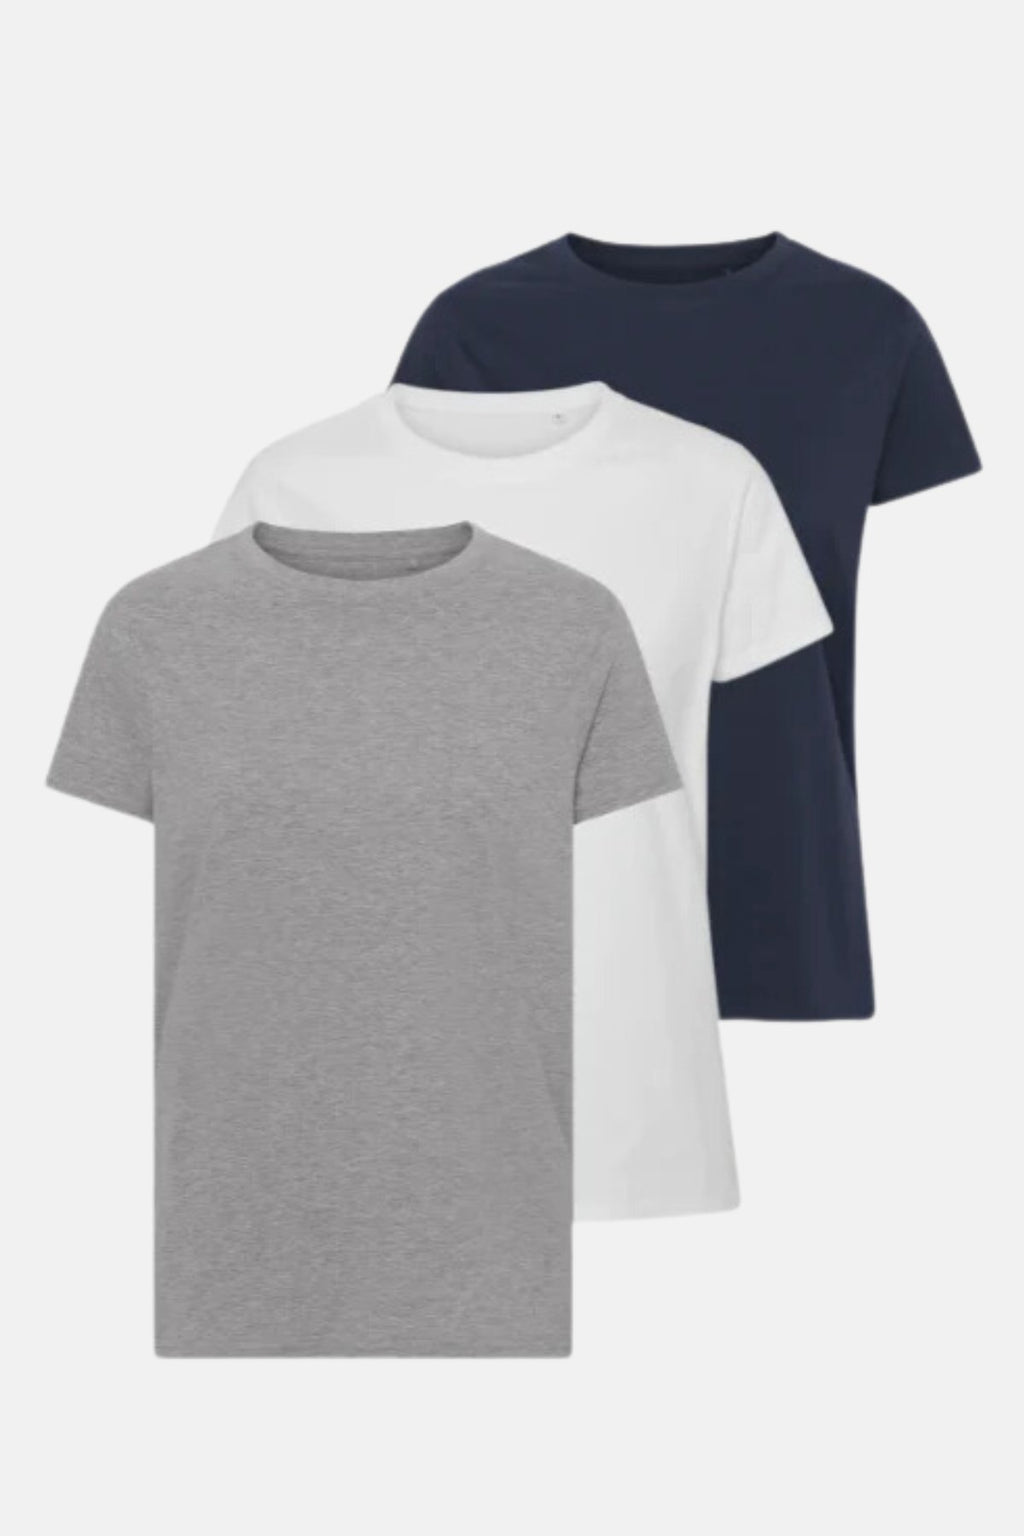 Basic T -Shirt - Paketgeschäft (3 PCs.)